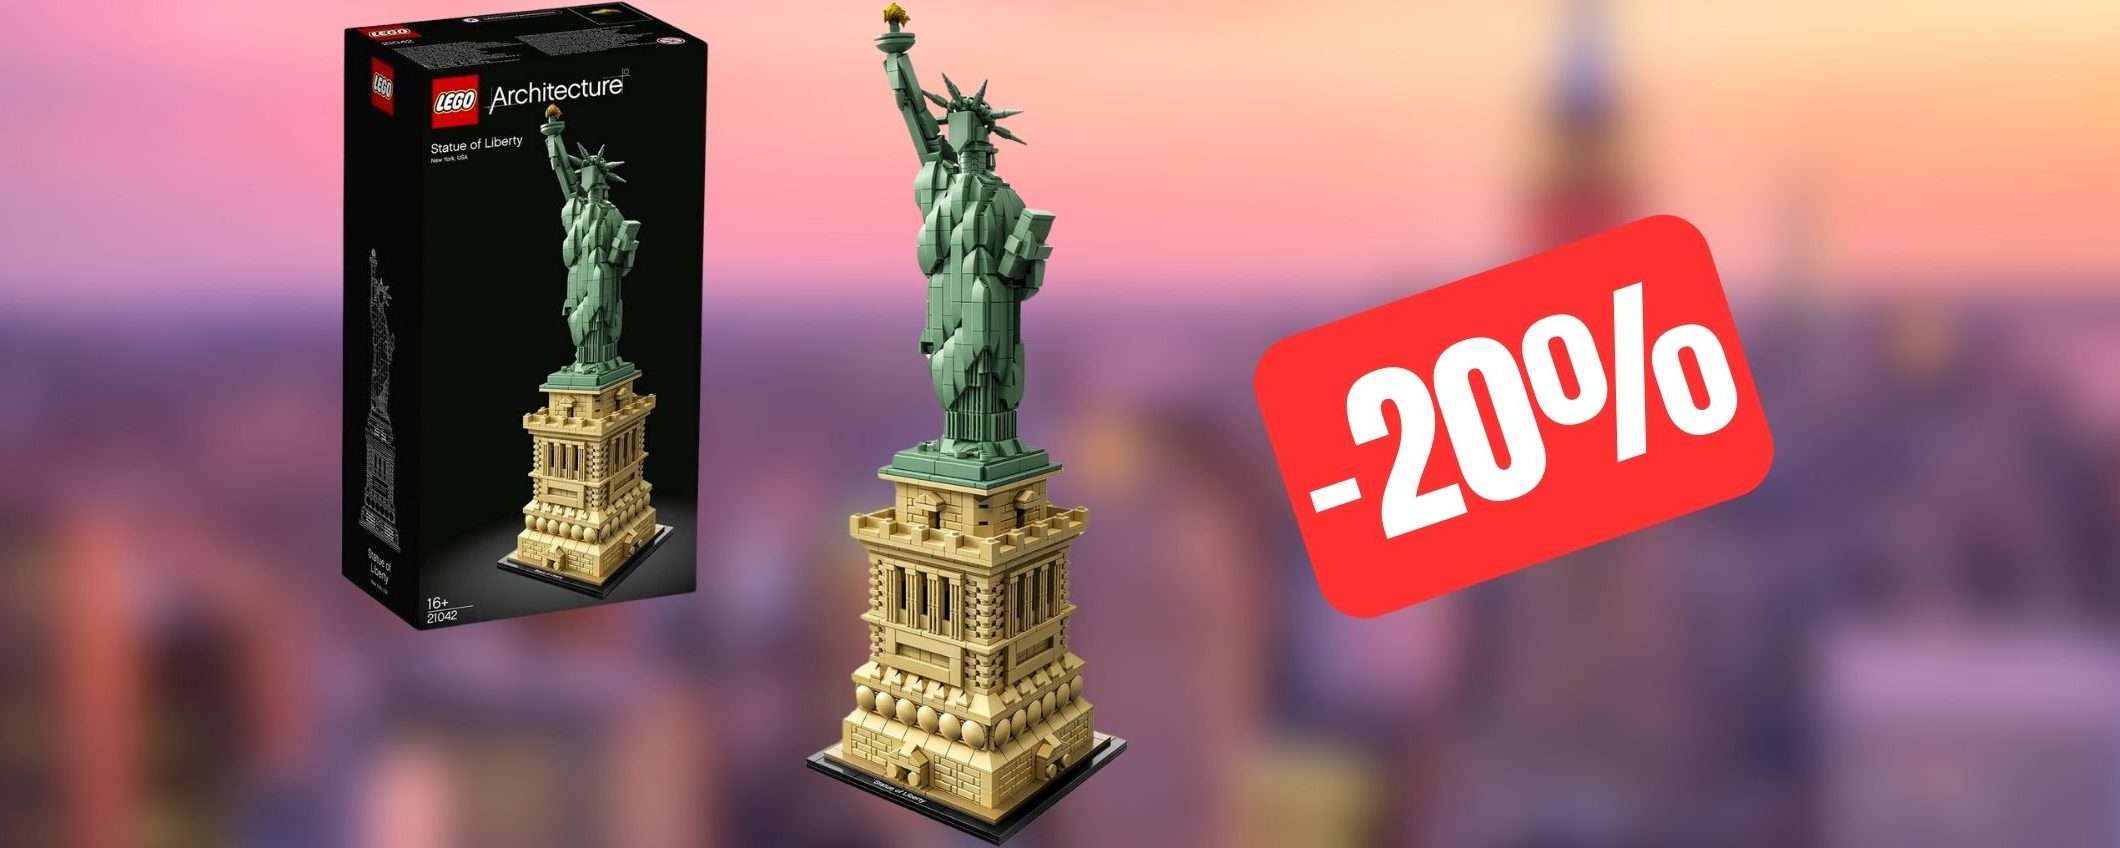 La Statua della Libertà LEGO è in OFFERTA su Amazon (-20%)